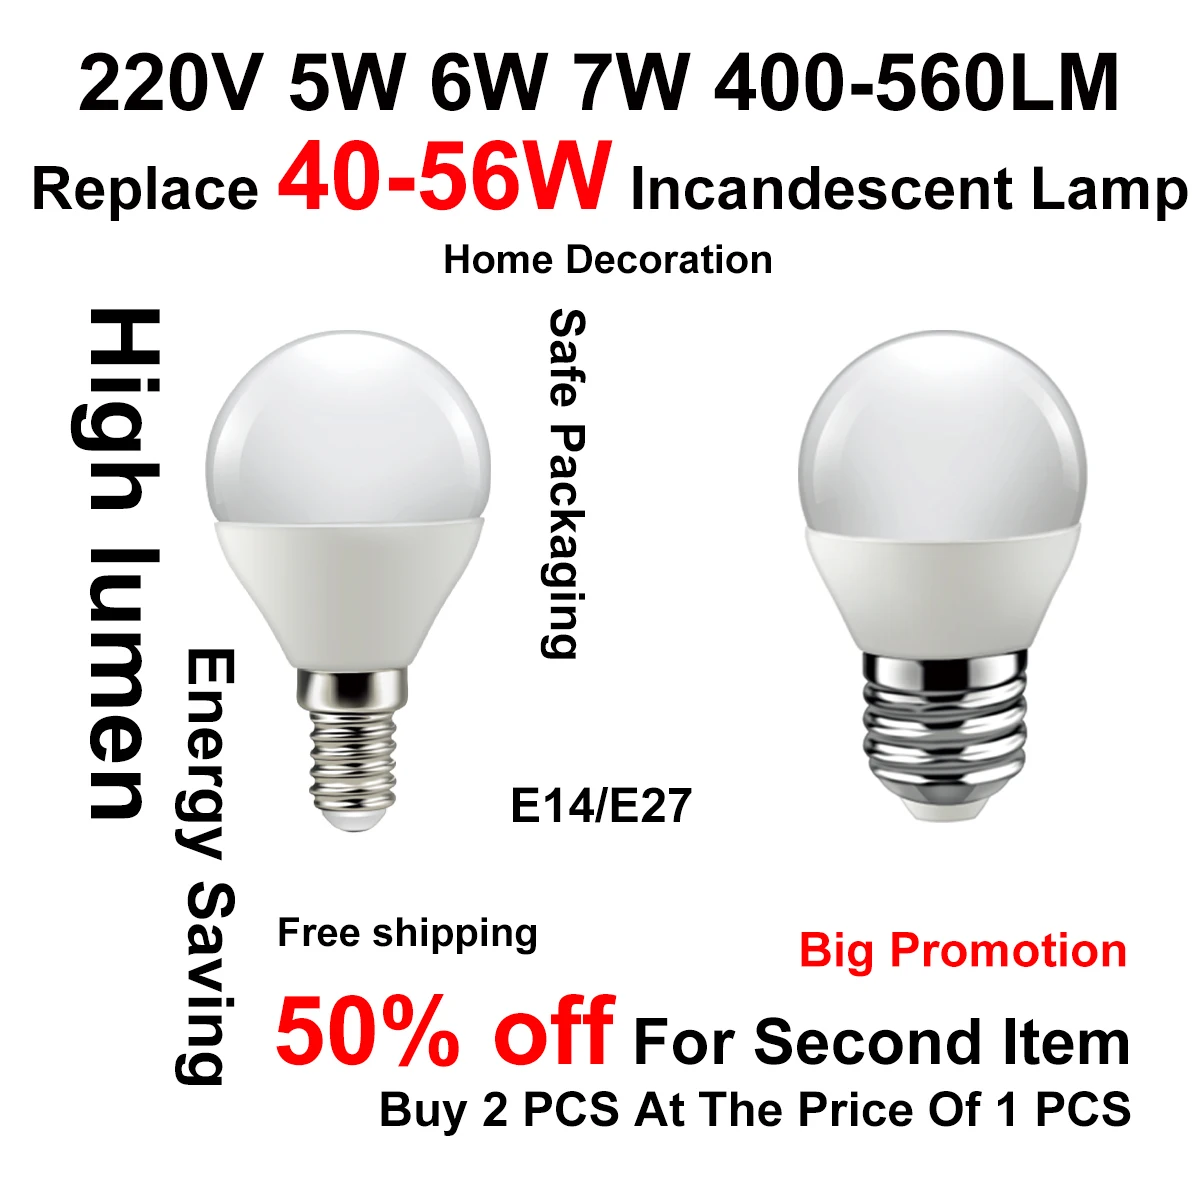 

Led Bulb G45 5w E14 7w E27 Lampada 220v-240v Lamp For Home Decoration Office Bombillas